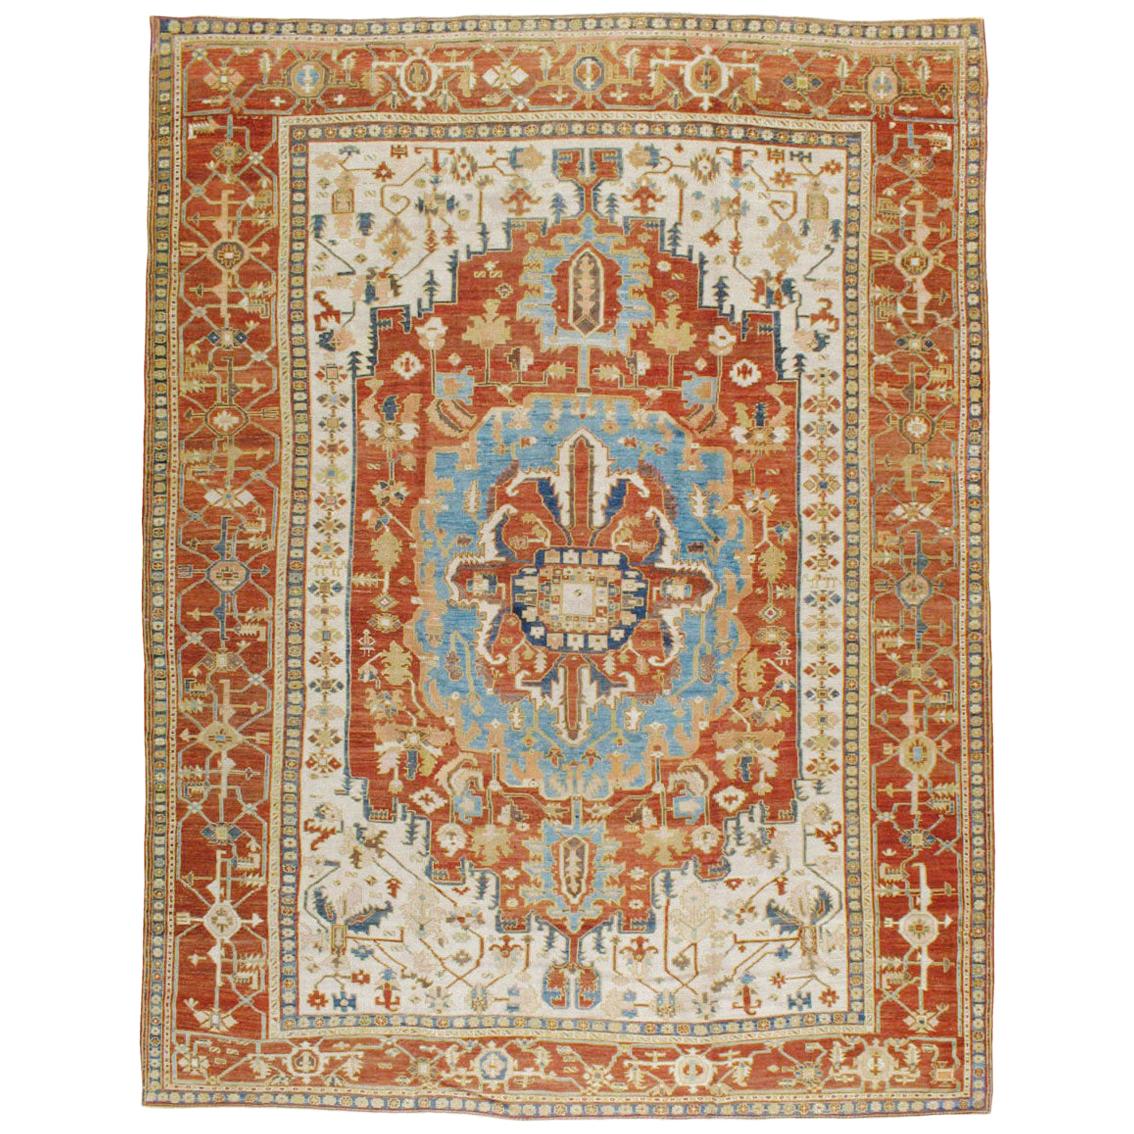 Handgefertigter persischer Serapi-Teppich in Zimmergröße aus dem frühen 20. Jahrhundert